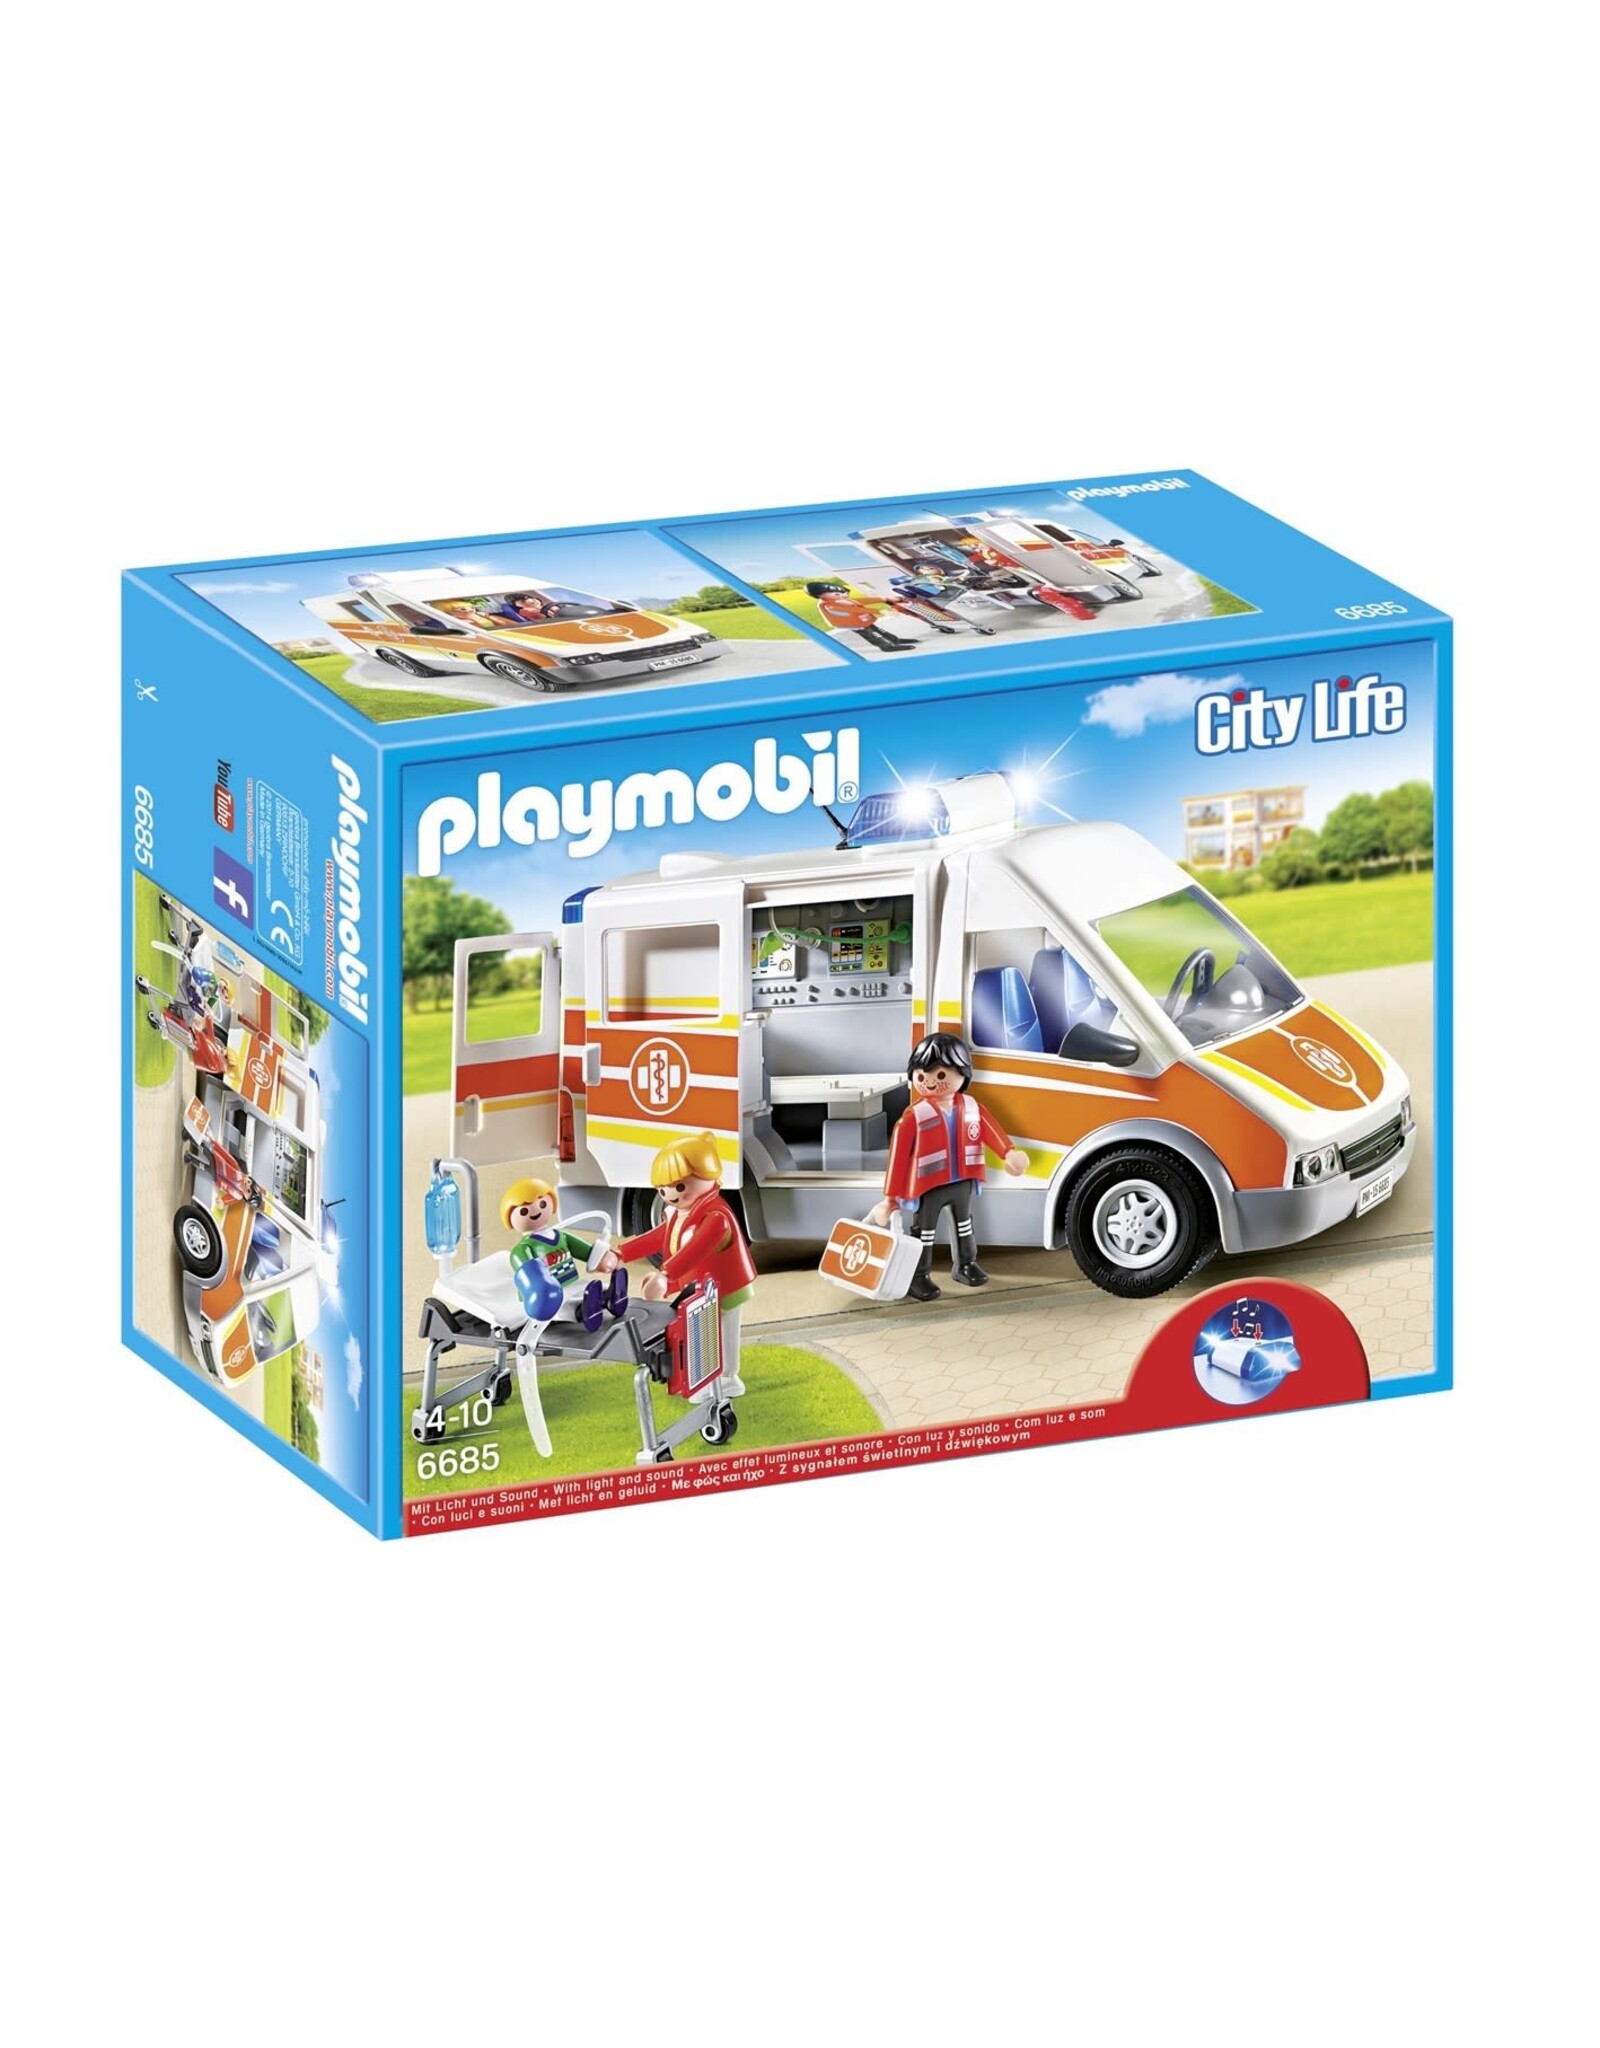 Playmobil Playmobil City Life 6685 Ziekenwagen met Licht en Geluid